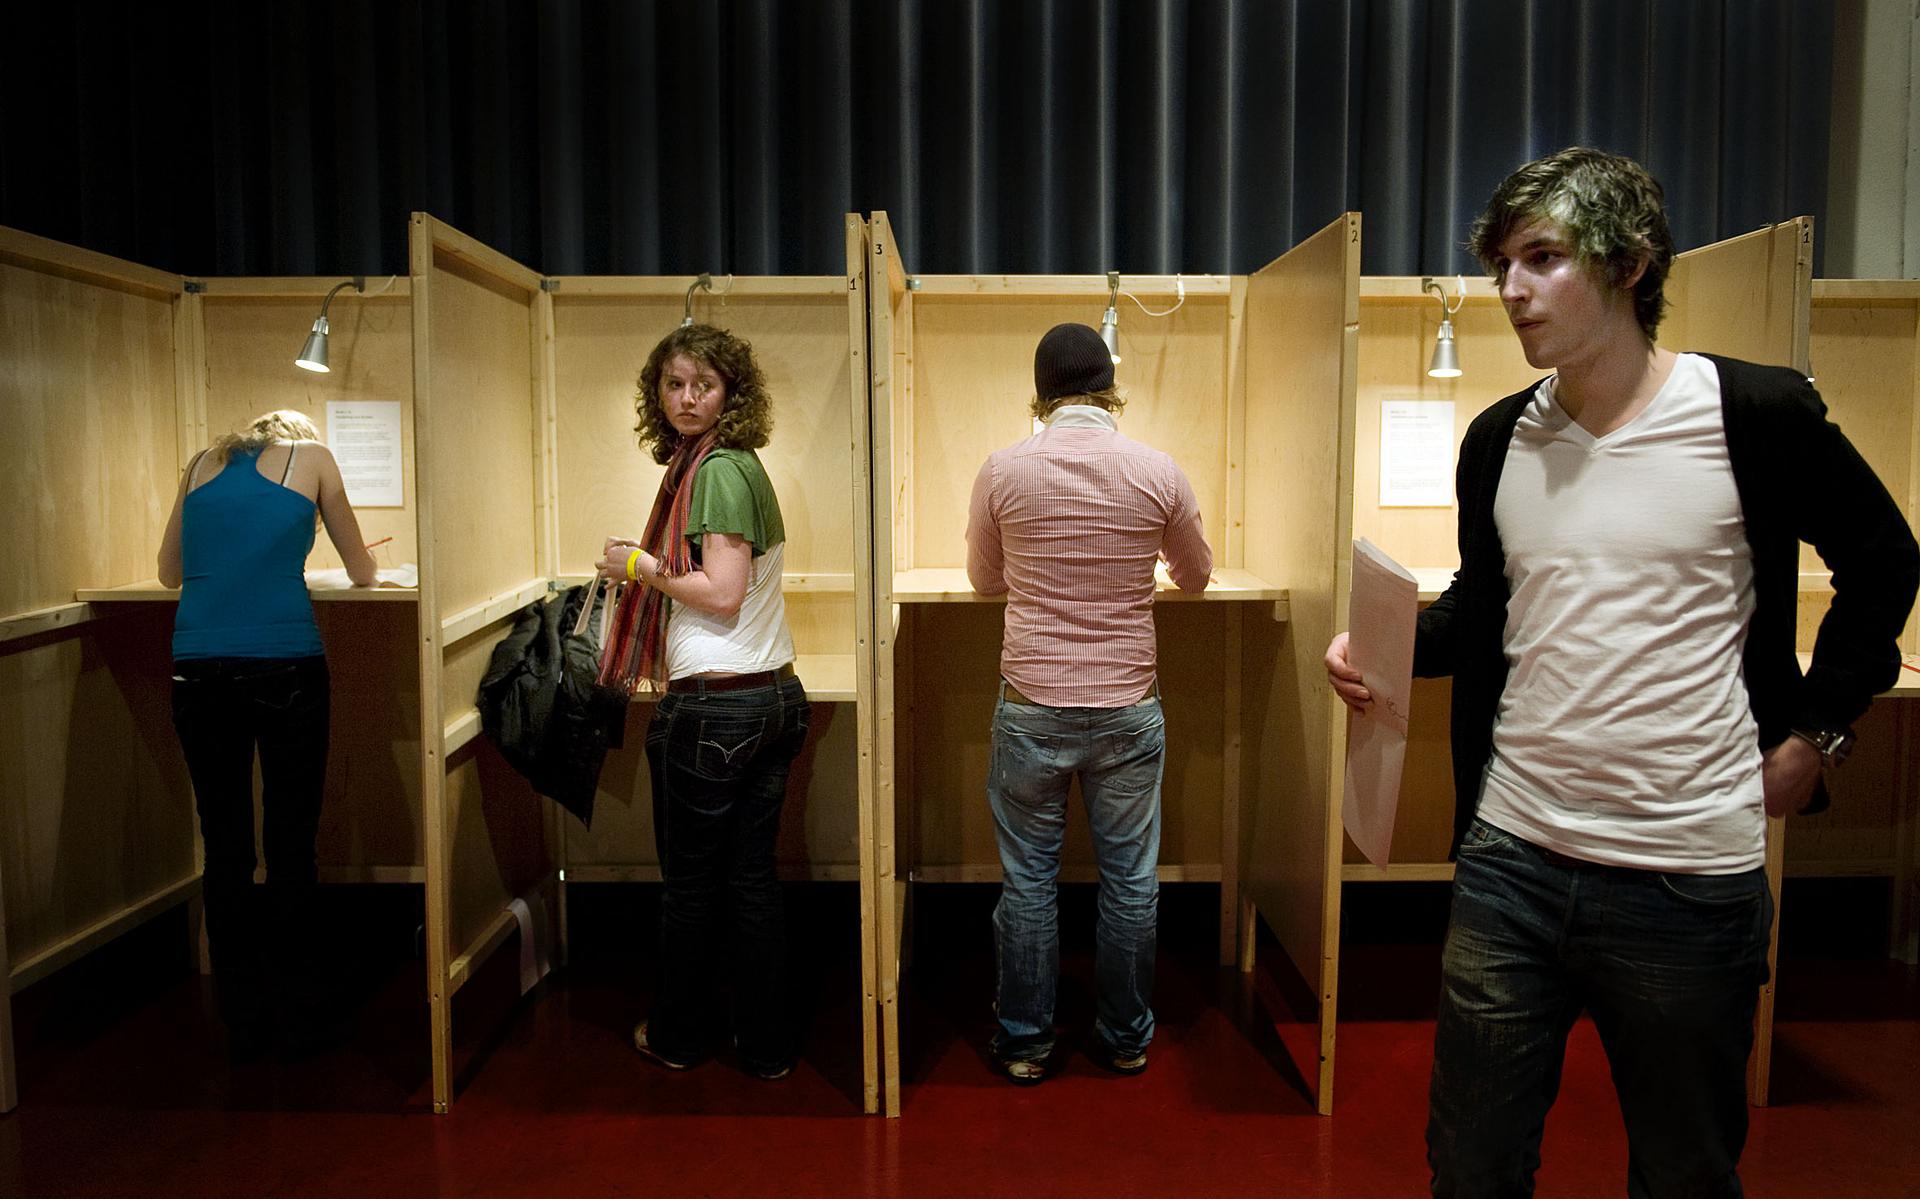 Om een referendum te kunnen organiseren in Groningen, moesten er nieuwe gemeentelijke regels worden gemaakt. op de foto: Mensen brengen hun stem uit in de Oosterpoort. 